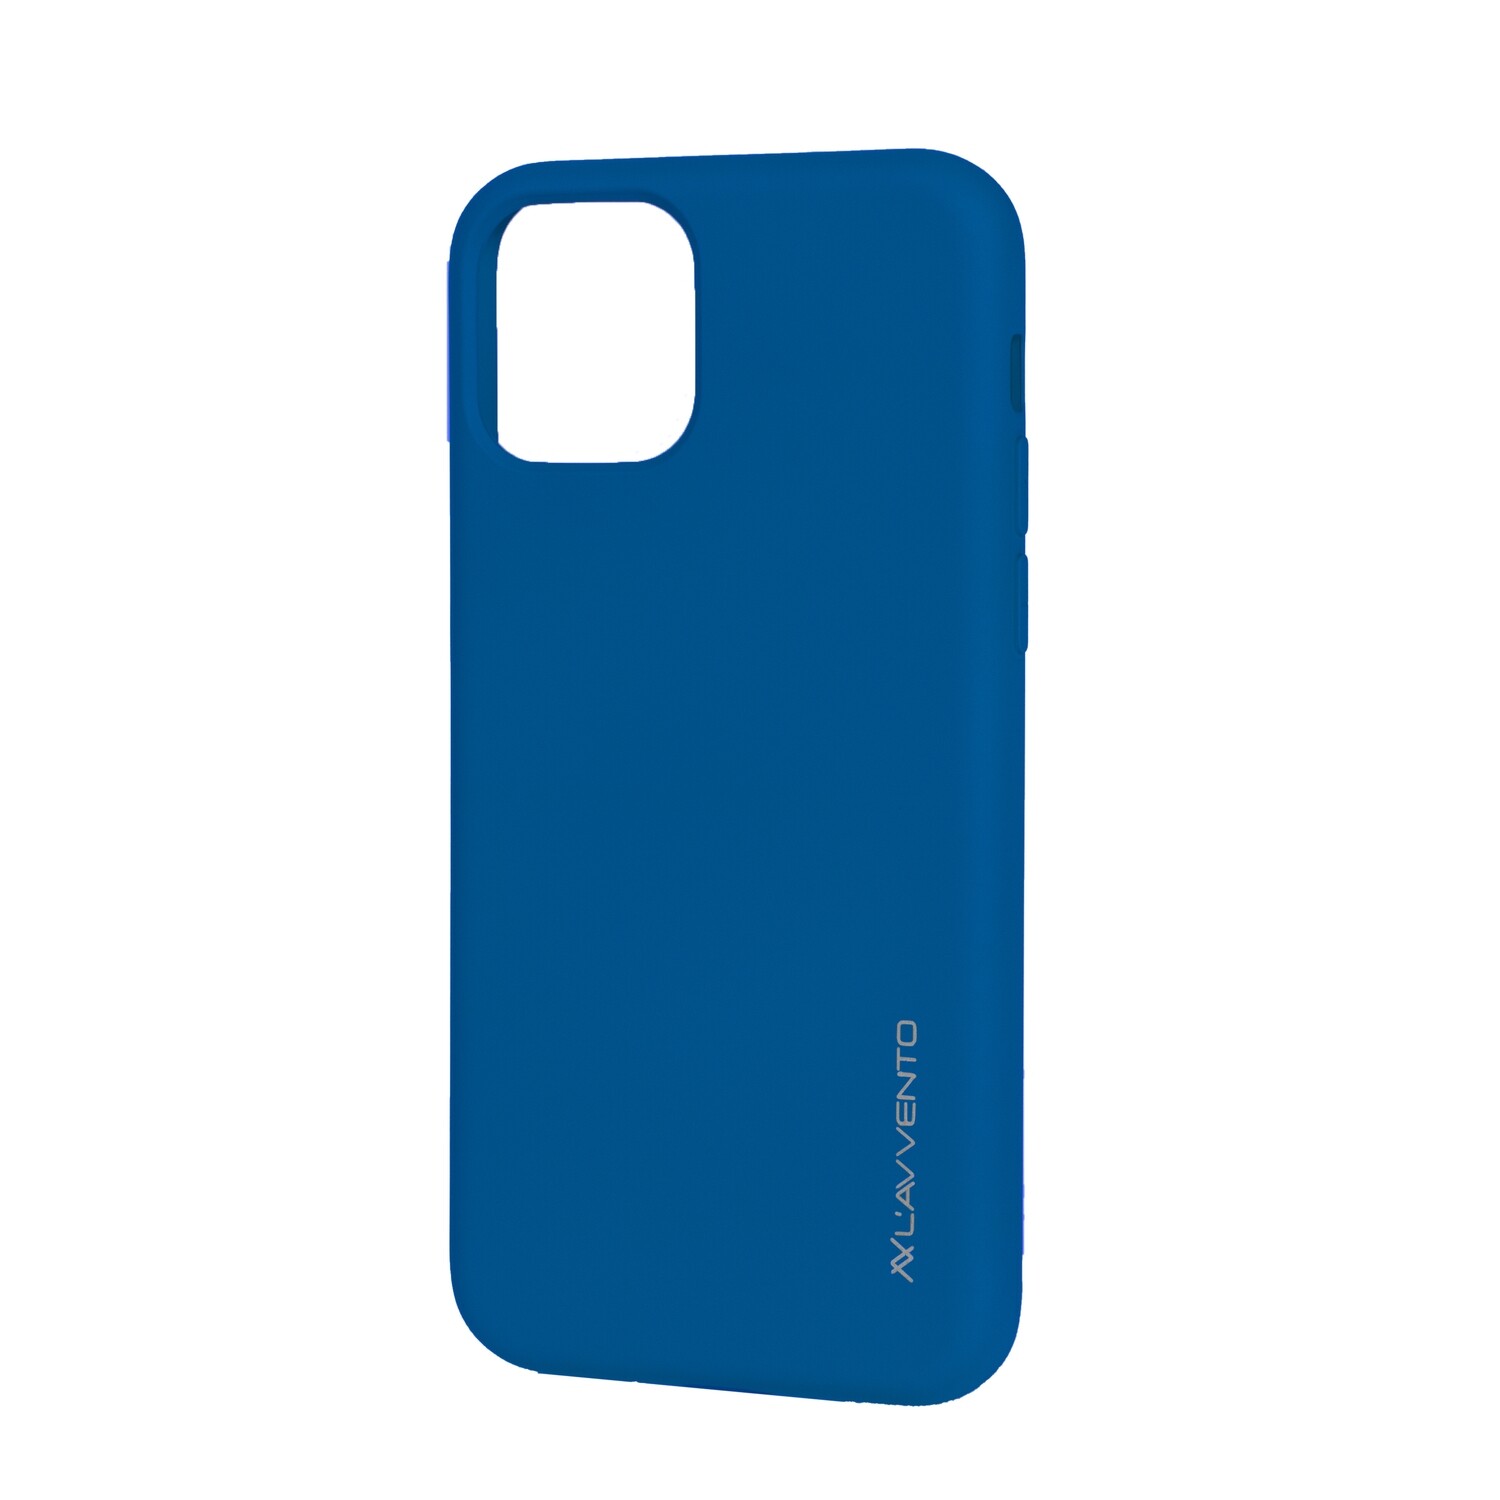 Silicon Case CA87L for iPhone 11 Pro Max - Blue